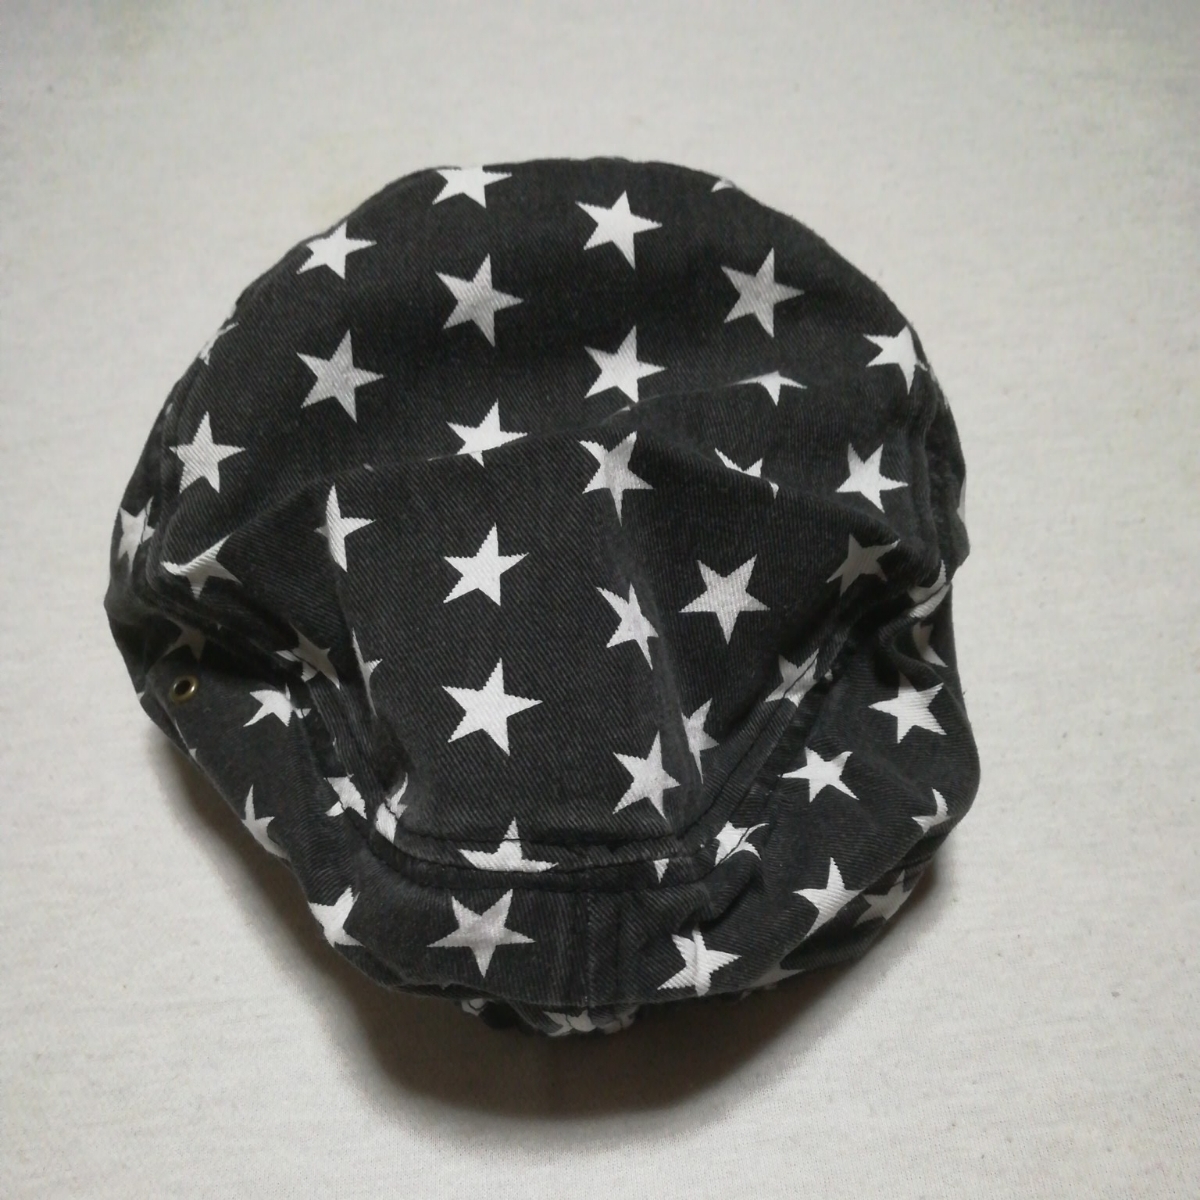 帽子 キャップ 黒 星柄 サイズフリー 野球帽 売買されたオークション情報 Yahooの商品情報をアーカイブ公開 オークファン Aucfan Com